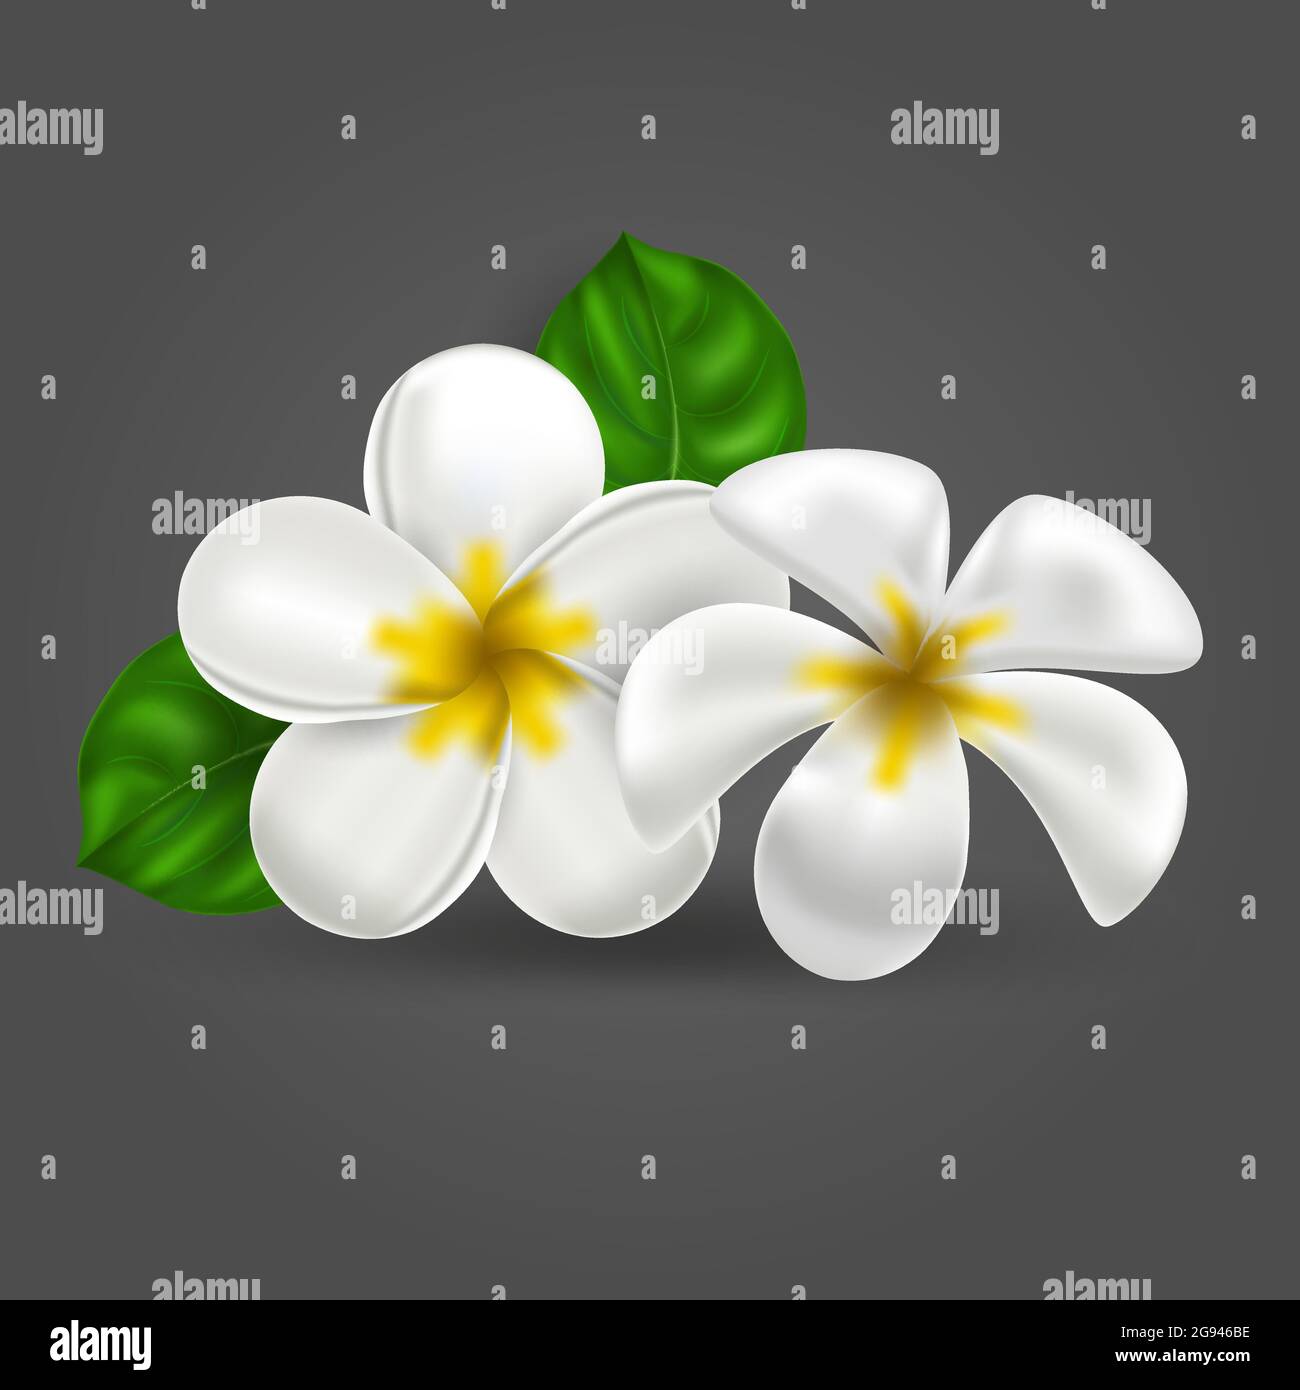 Vettore realistico tropicale hawaiano fiore plumeria. Bianco-giallo isolato oggetto frangipani su uno sfondo scuro. Paradiso estivo. Natura botanica il Illustrazione Vettoriale